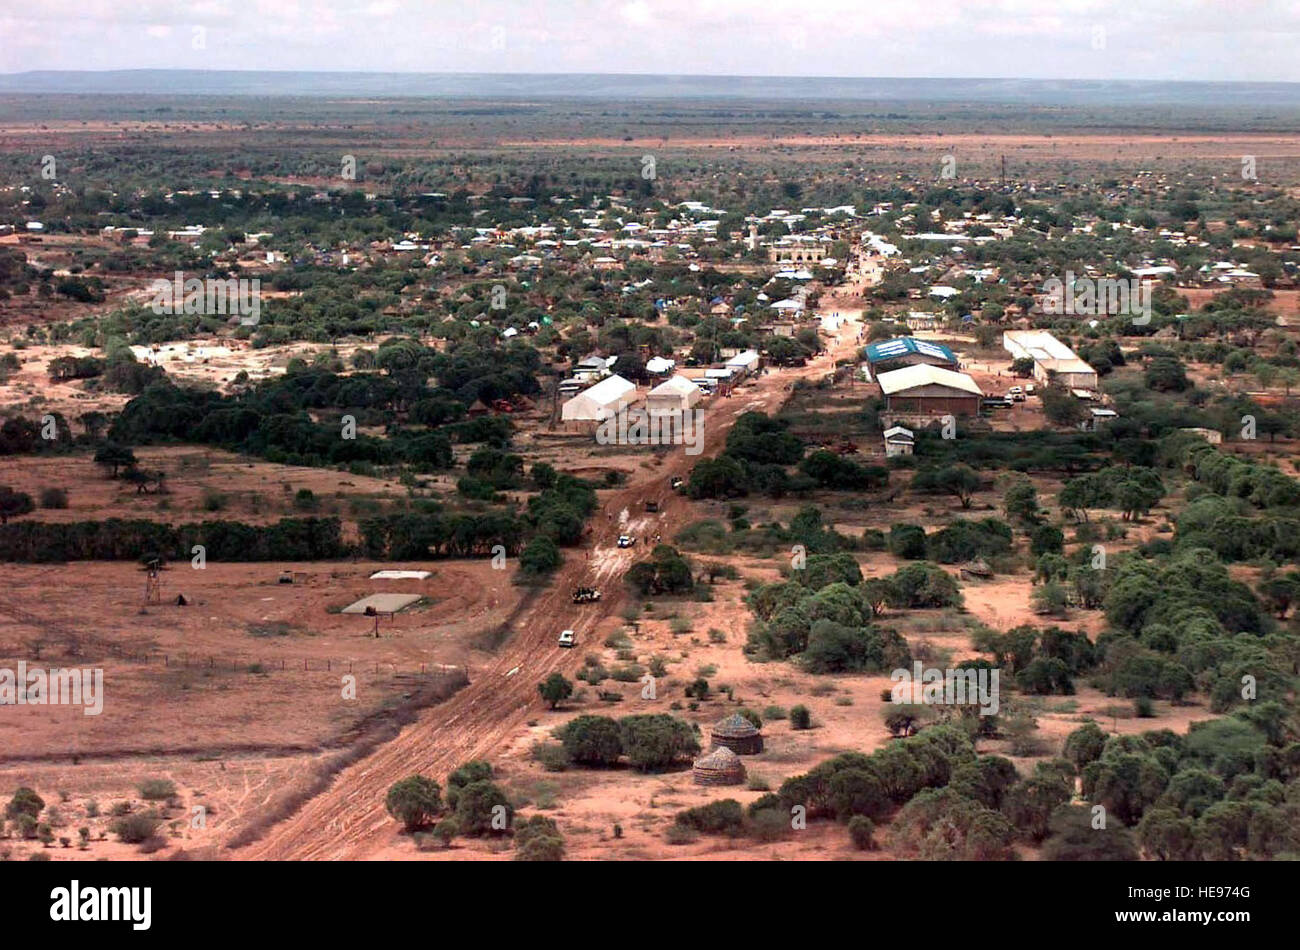 Luftaufnahme des somalischen Dorf von Bardera.  Einige Fahrzeuge sind gesehen verlassen des Dorfes auf einer unbefestigten Straße, die aus der Stadt herausführt.  Die Botswana Armee dient zur Sicherheitsleistung für die humanitäre Hilfe-Gruppen, die Nahrung zu den Leuten von Bardera verteilen.  Diese Mission ist zur direkten Unterstützung der Operation Restore Hope. Stockfoto